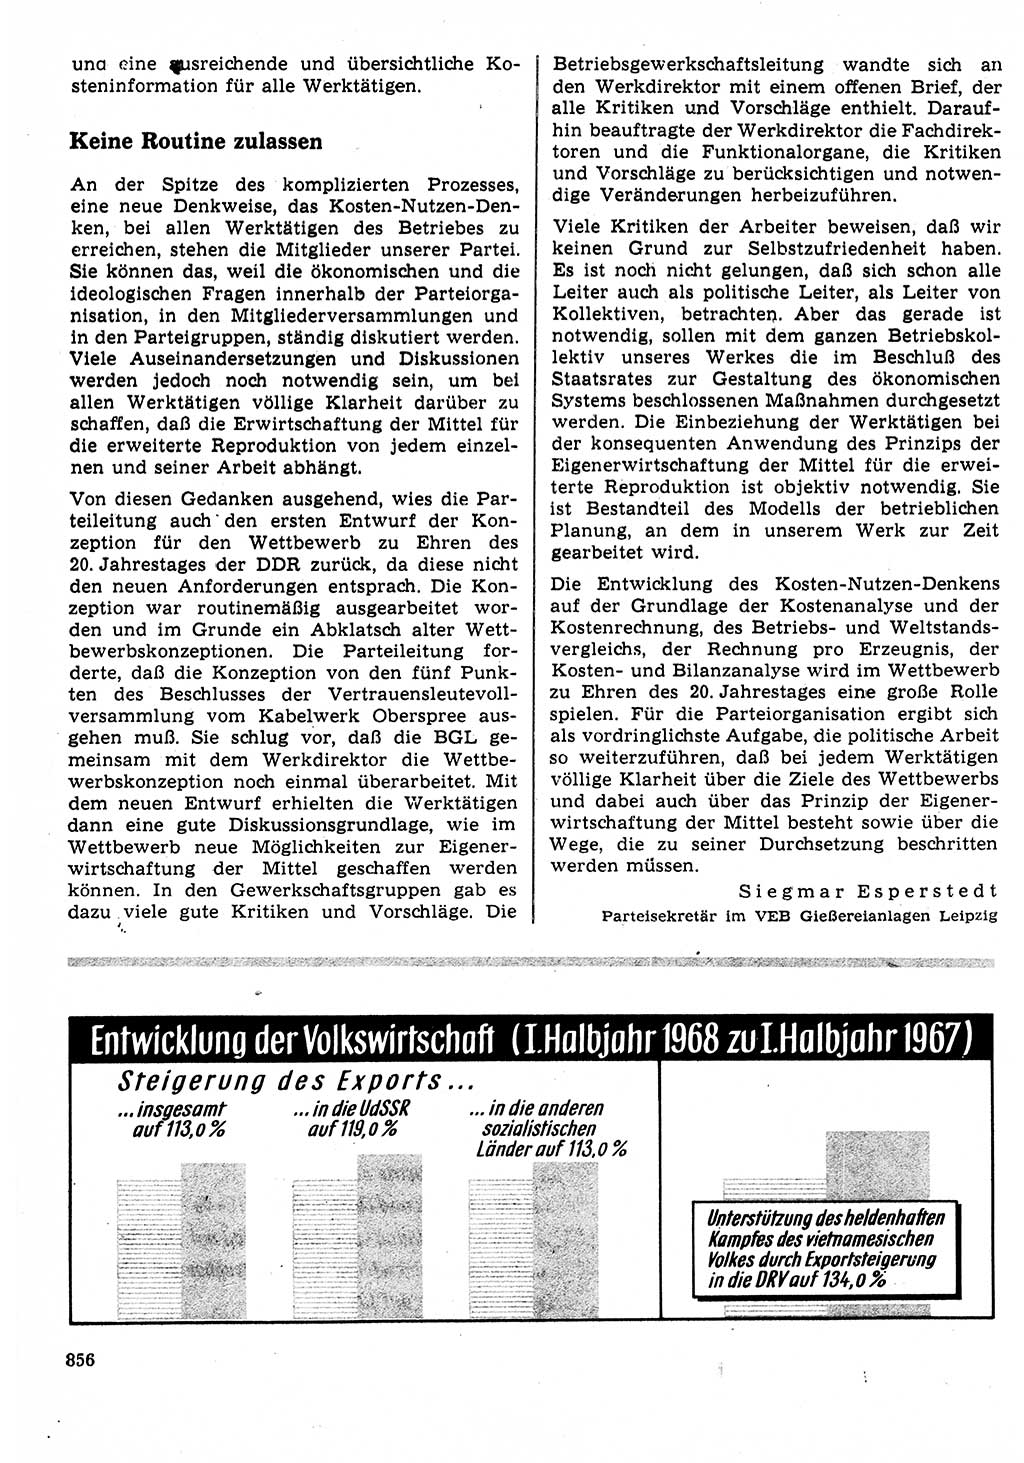 Neuer Weg (NW), Organ des Zentralkomitees (ZK) der SED (Sozialistische Einheitspartei Deutschlands) für Fragen des Parteilebens, 23. Jahrgang [Deutsche Demokratische Republik (DDR)] 1968, Seite 840 (NW ZK SED DDR 1968, S. 840)